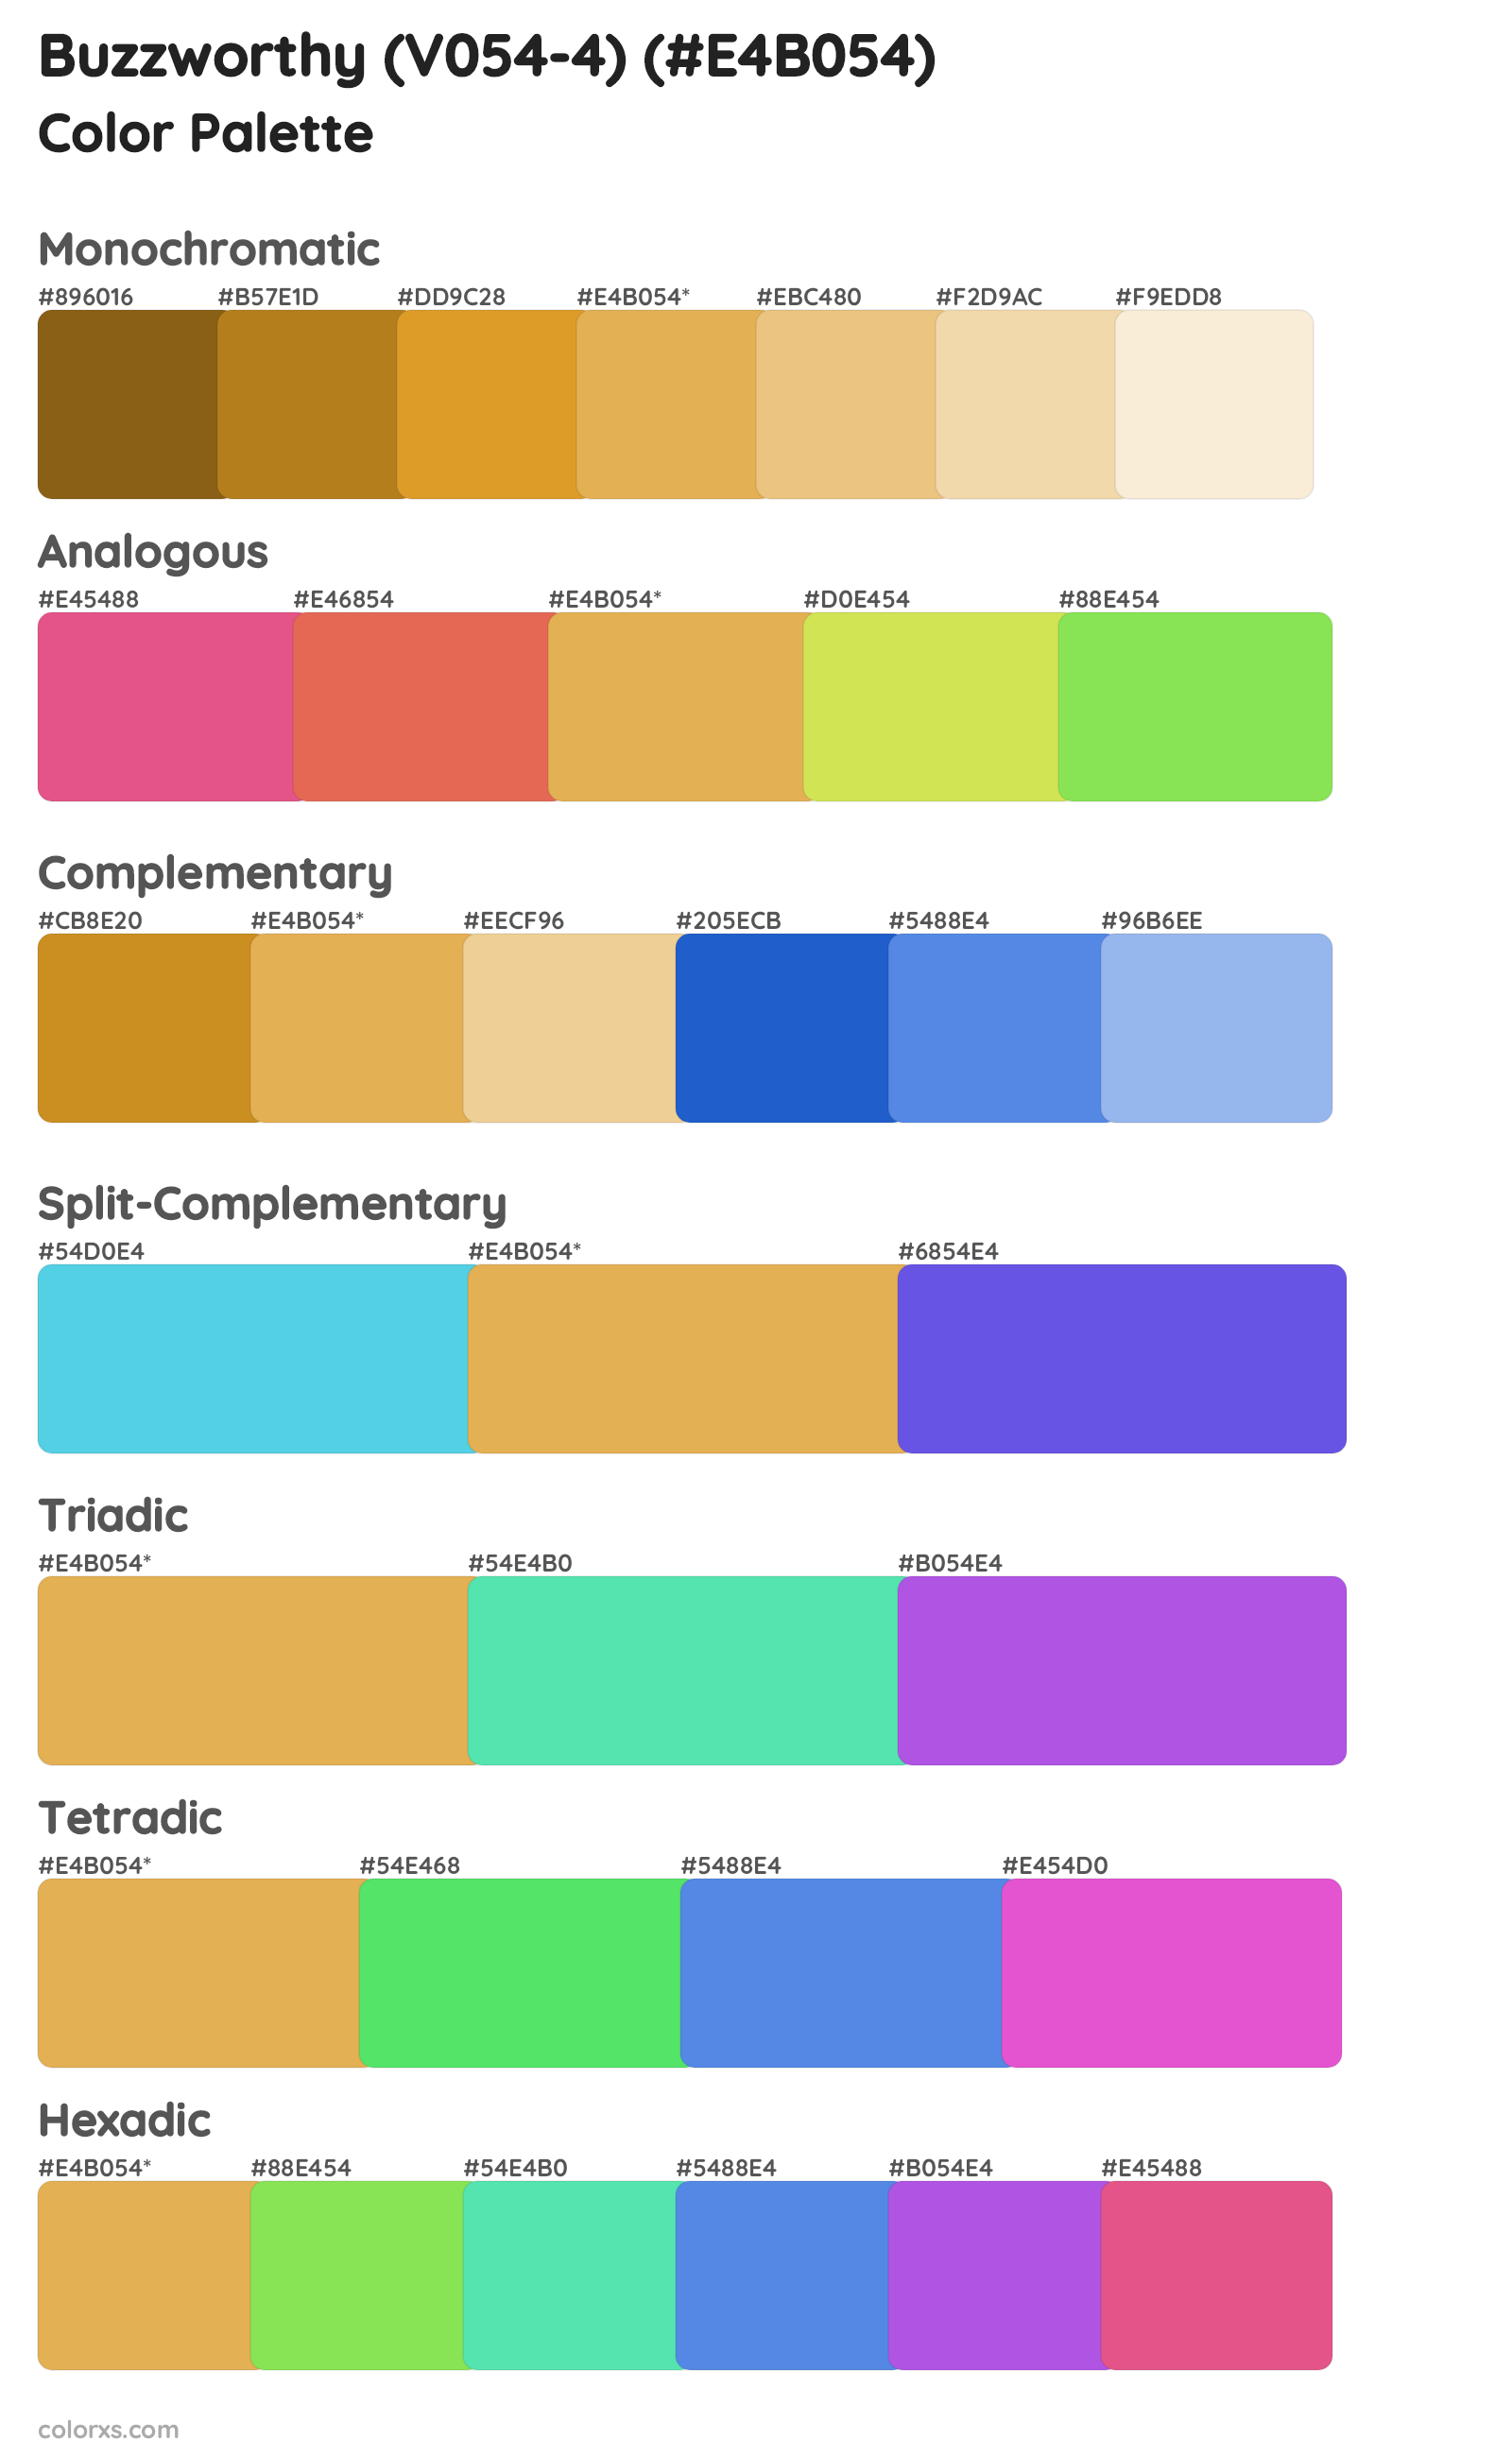 Buzzworthy (V054-4) Color Scheme Palettes